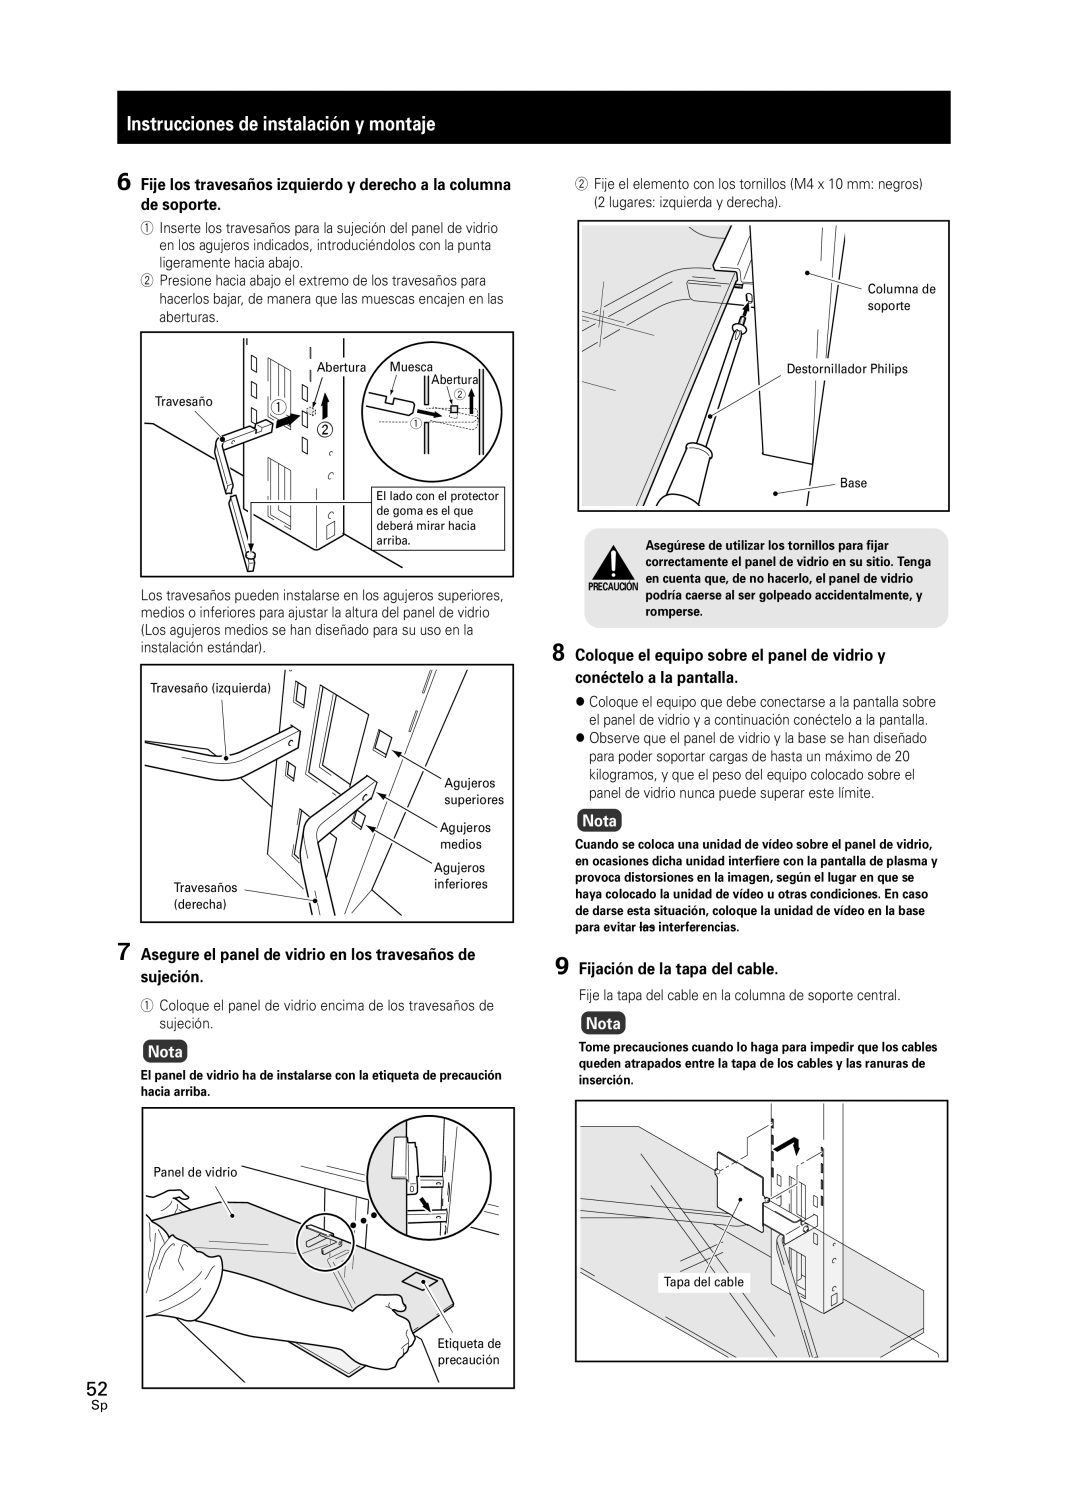 Pioneer PDK-FS05 manual Instrucciones de instalación y montaje, Nota, 9Fijación de la tapa del cable 